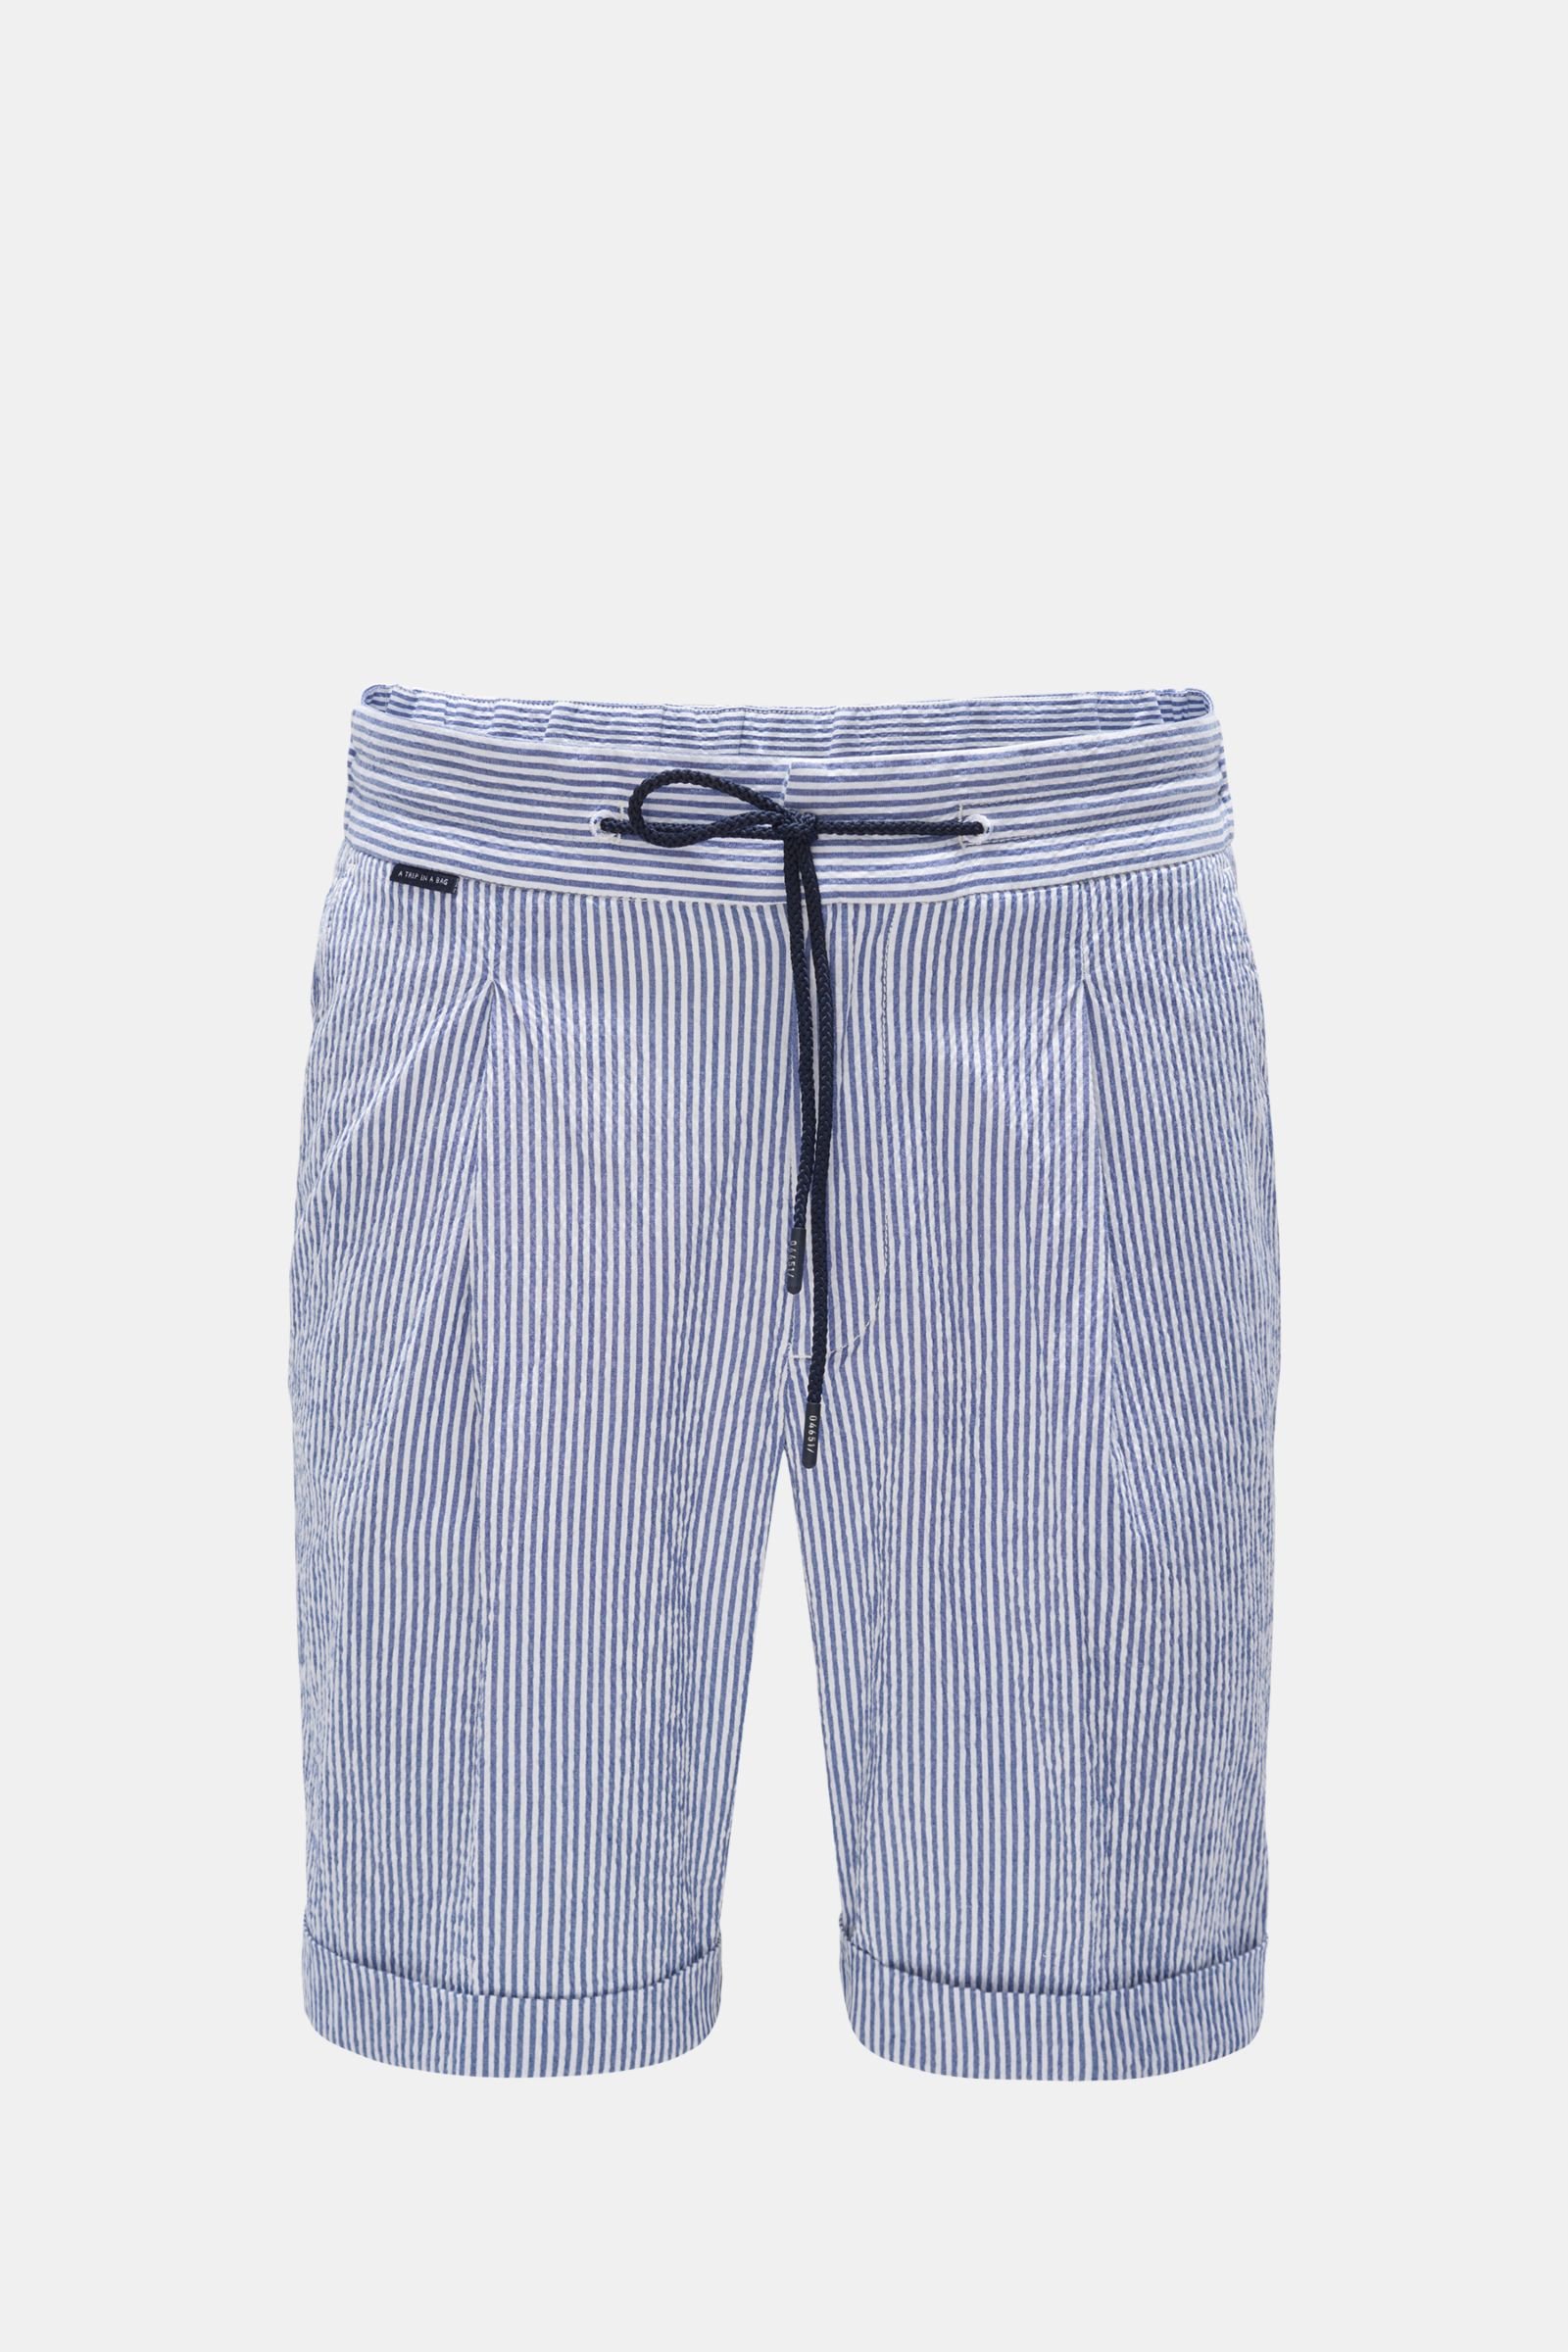 Seersucker Bermuda shorts grey-blue/white striped